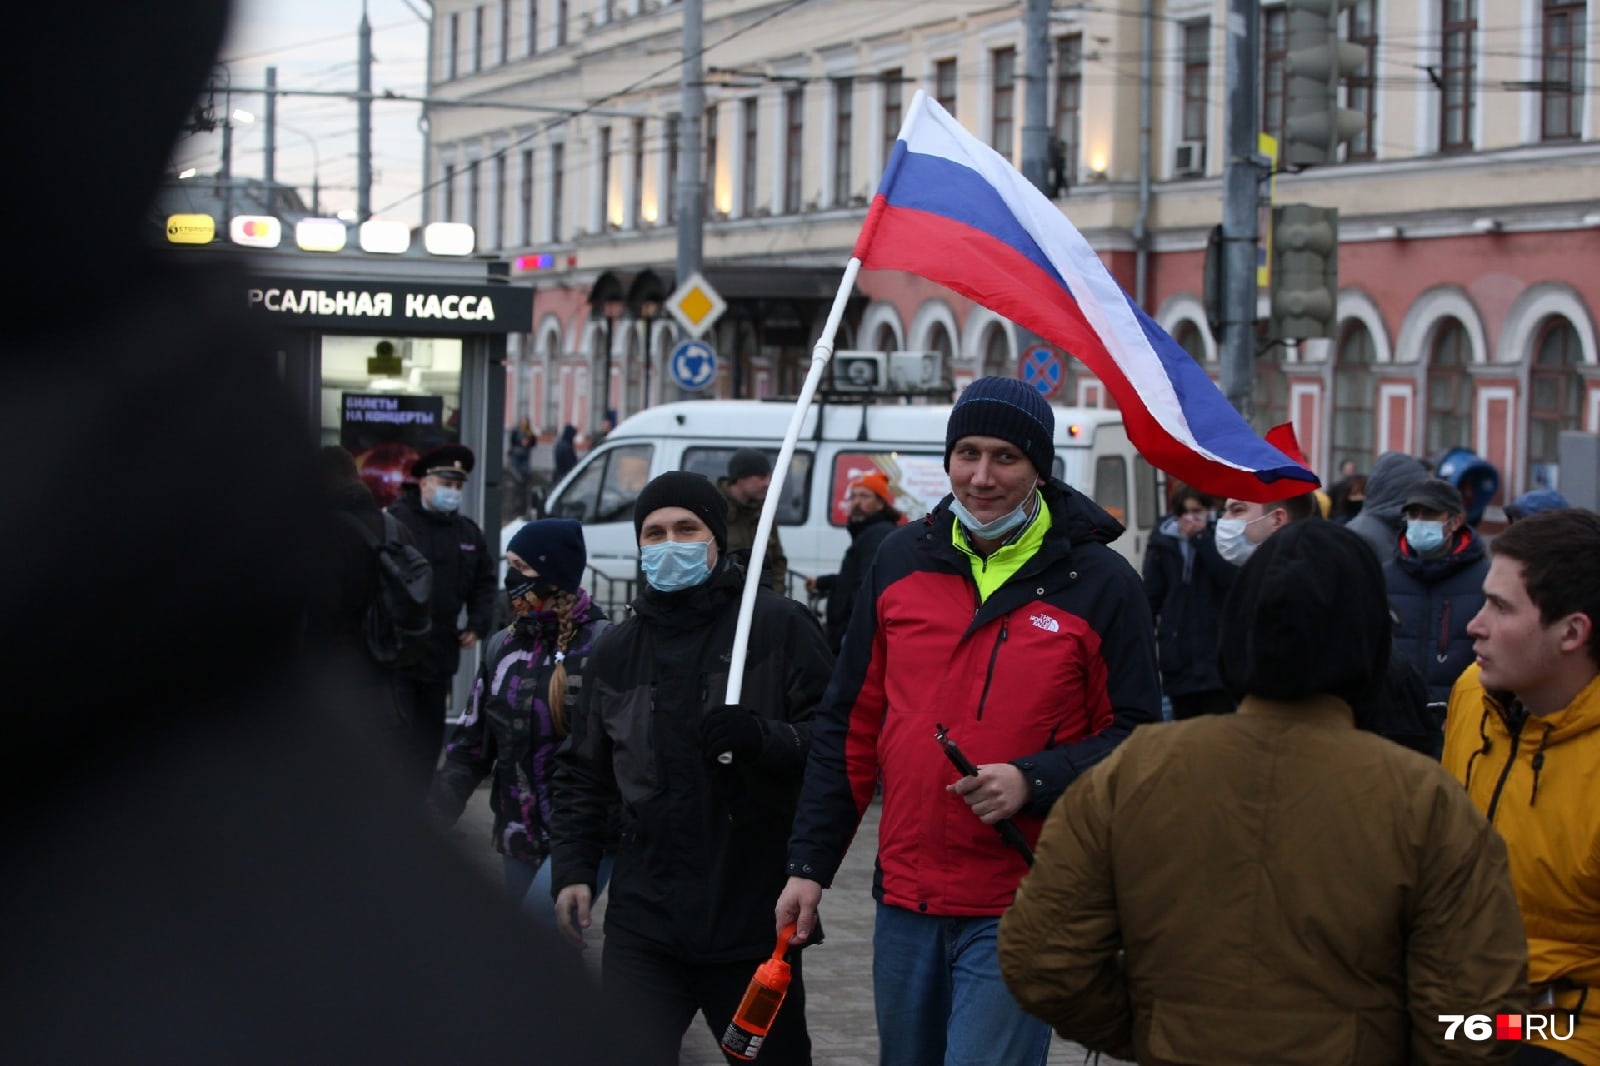 Настроение было хорошее в самом начале. Люди пели гимн России и выкрикивали «Это наш город!», «Свободу Алексею Навальному!»